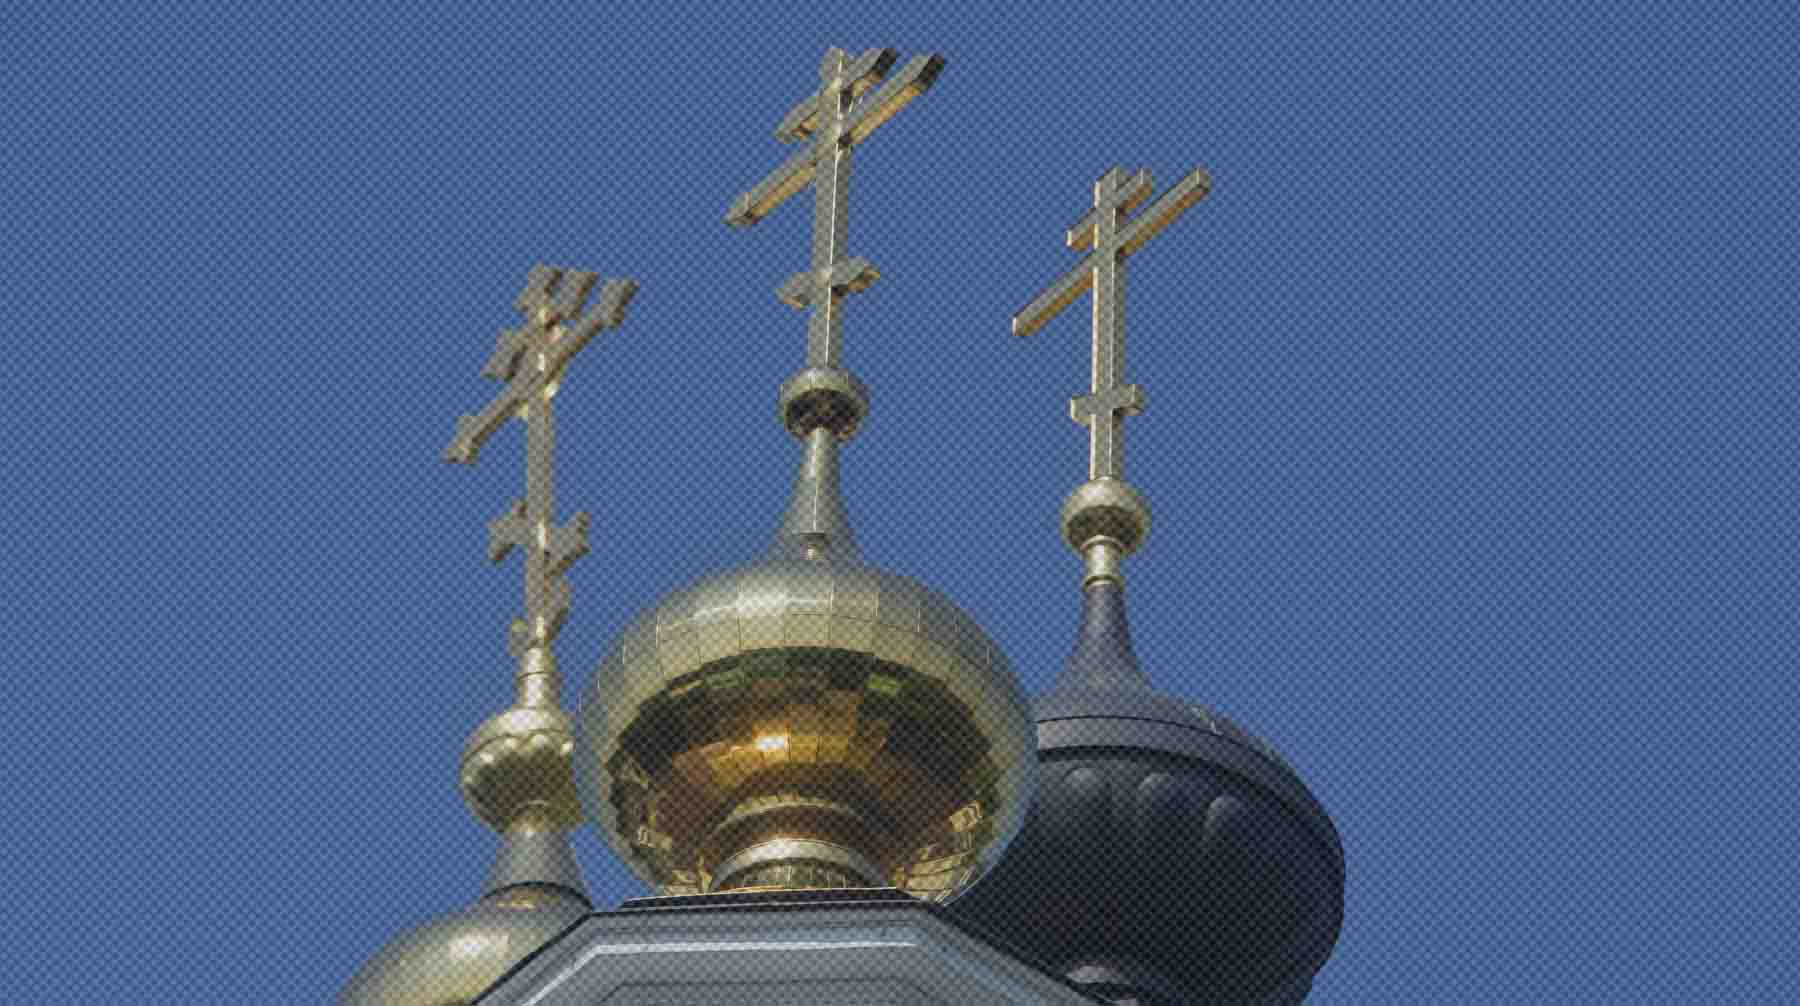 Церковь считает войну злом, но не запрещает участвовать в боевых действиях, если они ведутся с целью защитить близких Фото: Global Look Press / Комсомольская правда